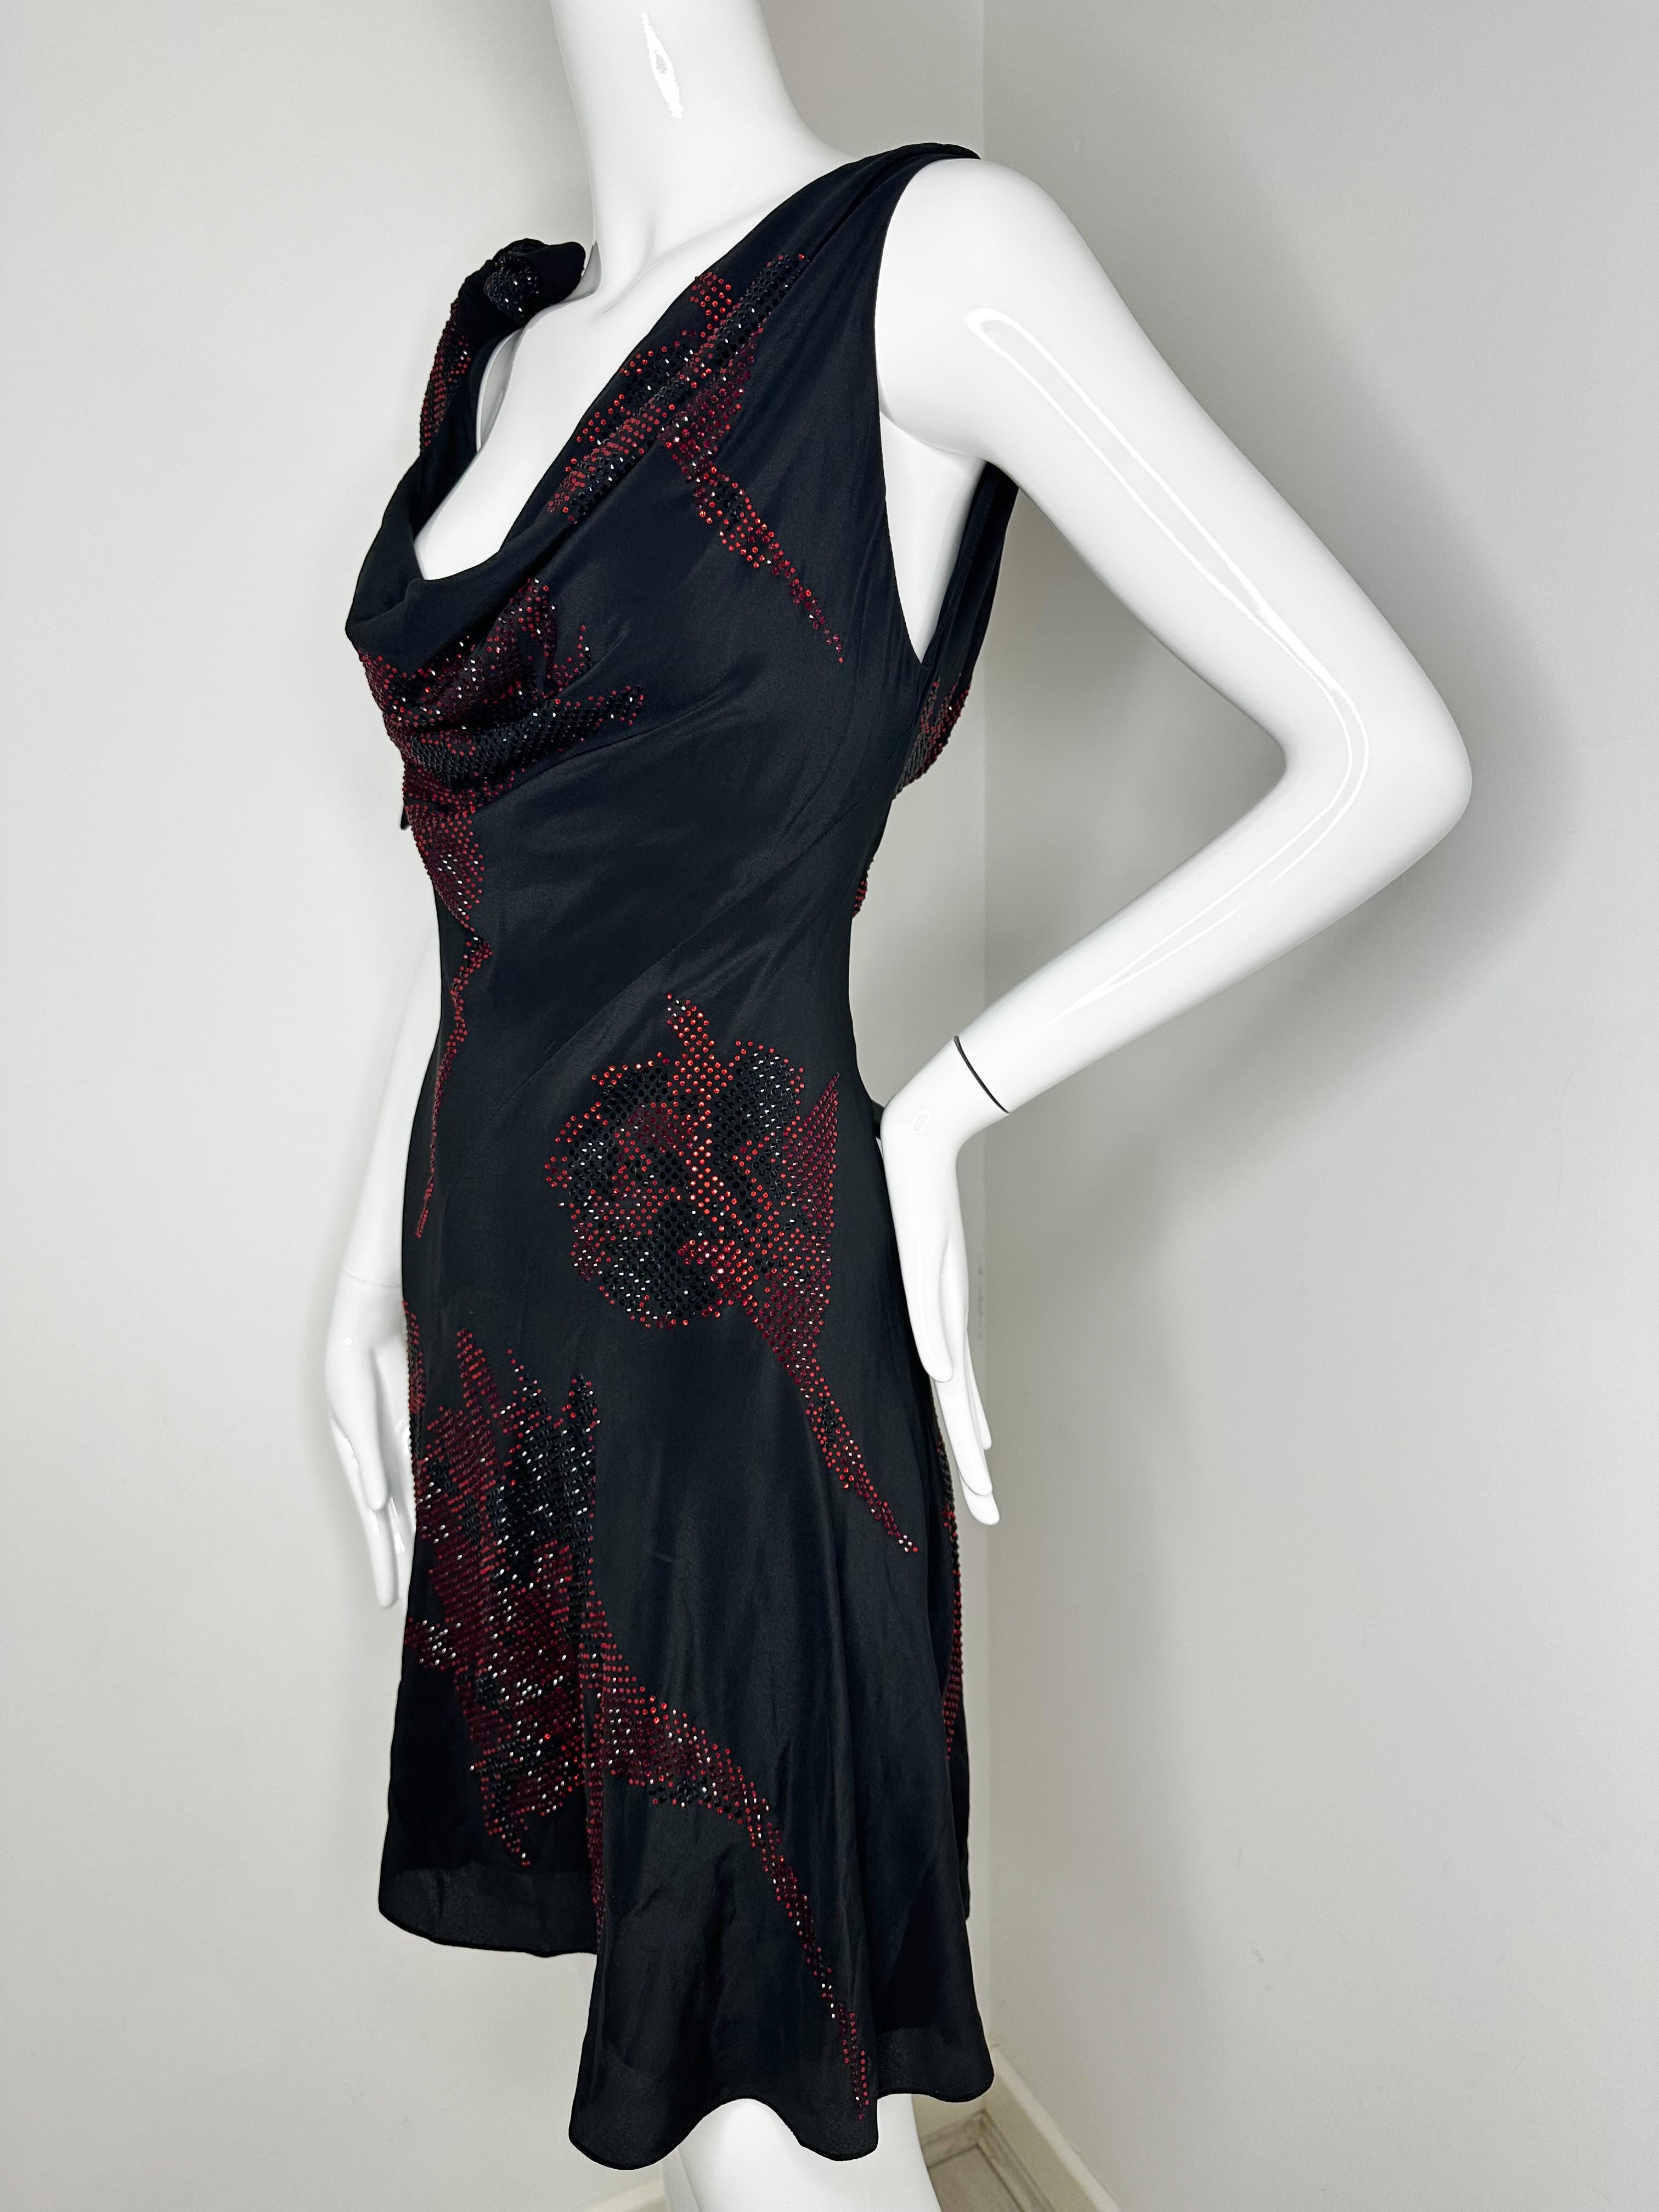 Roberto Cavalli - Mini robe Tulip rouge et noire ornée de cristaux 

Nouveau avec étiquettes 
Taille 40 

Original 4800